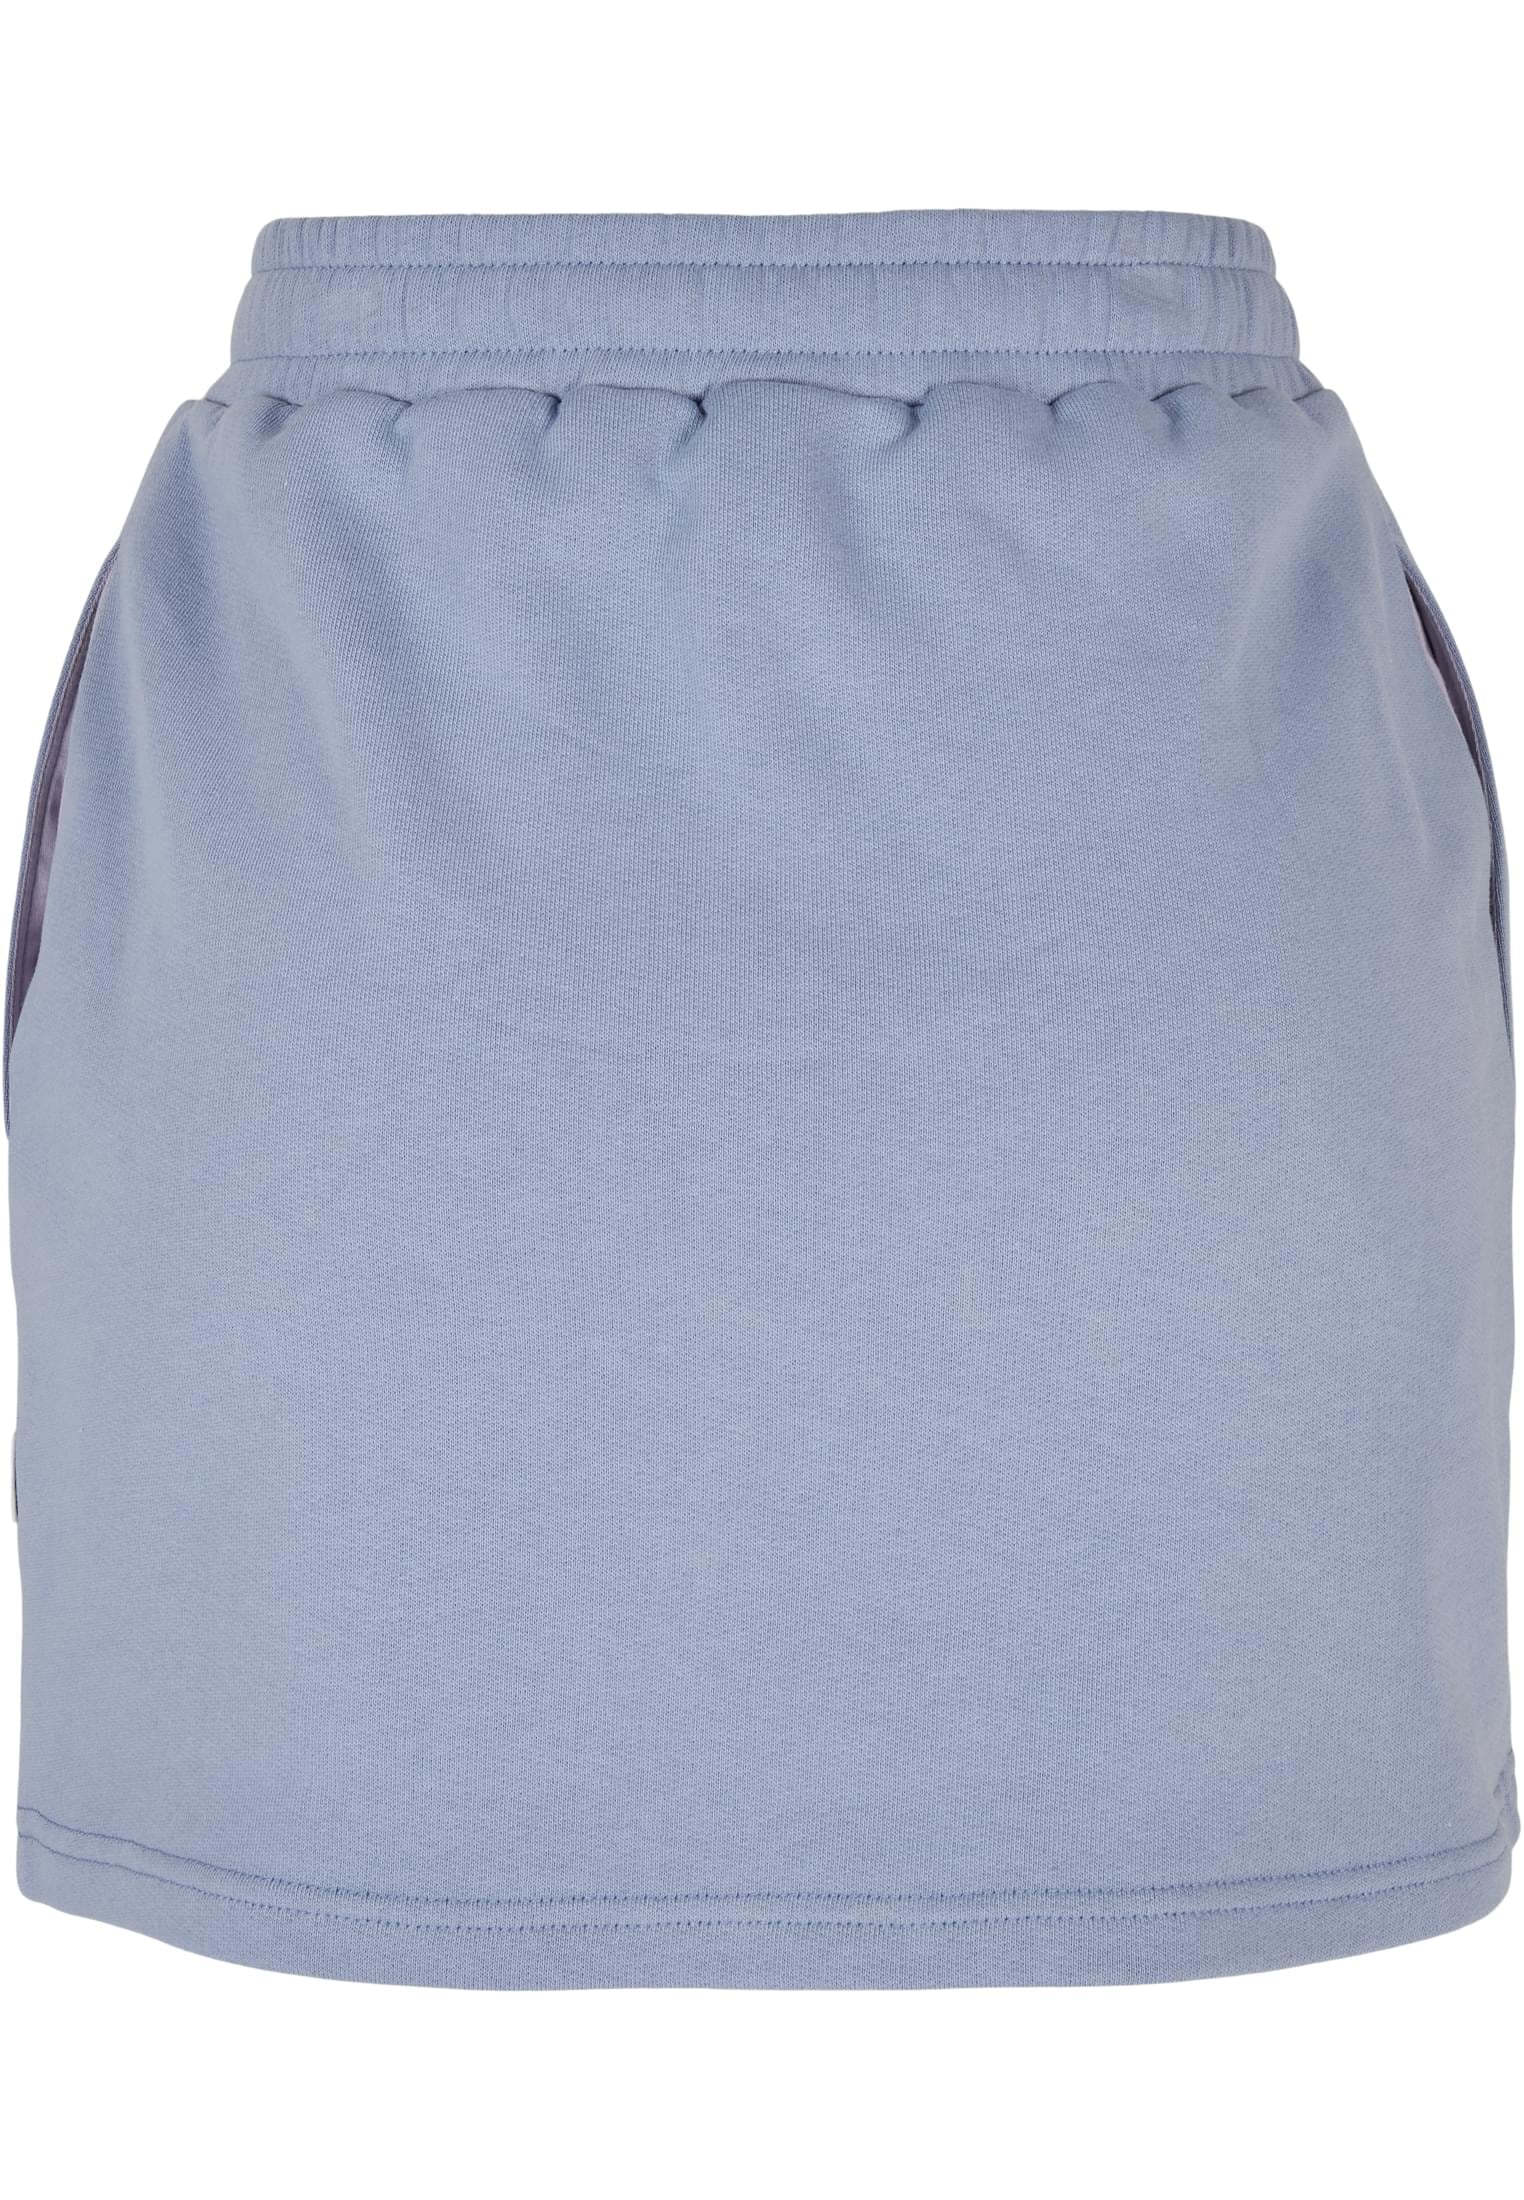 URBAN CLASSICS Jerseyrock »Damen Ladies Mini walking Organic online kaufen Terry Skirt«, (1 tlg.) I\'m 